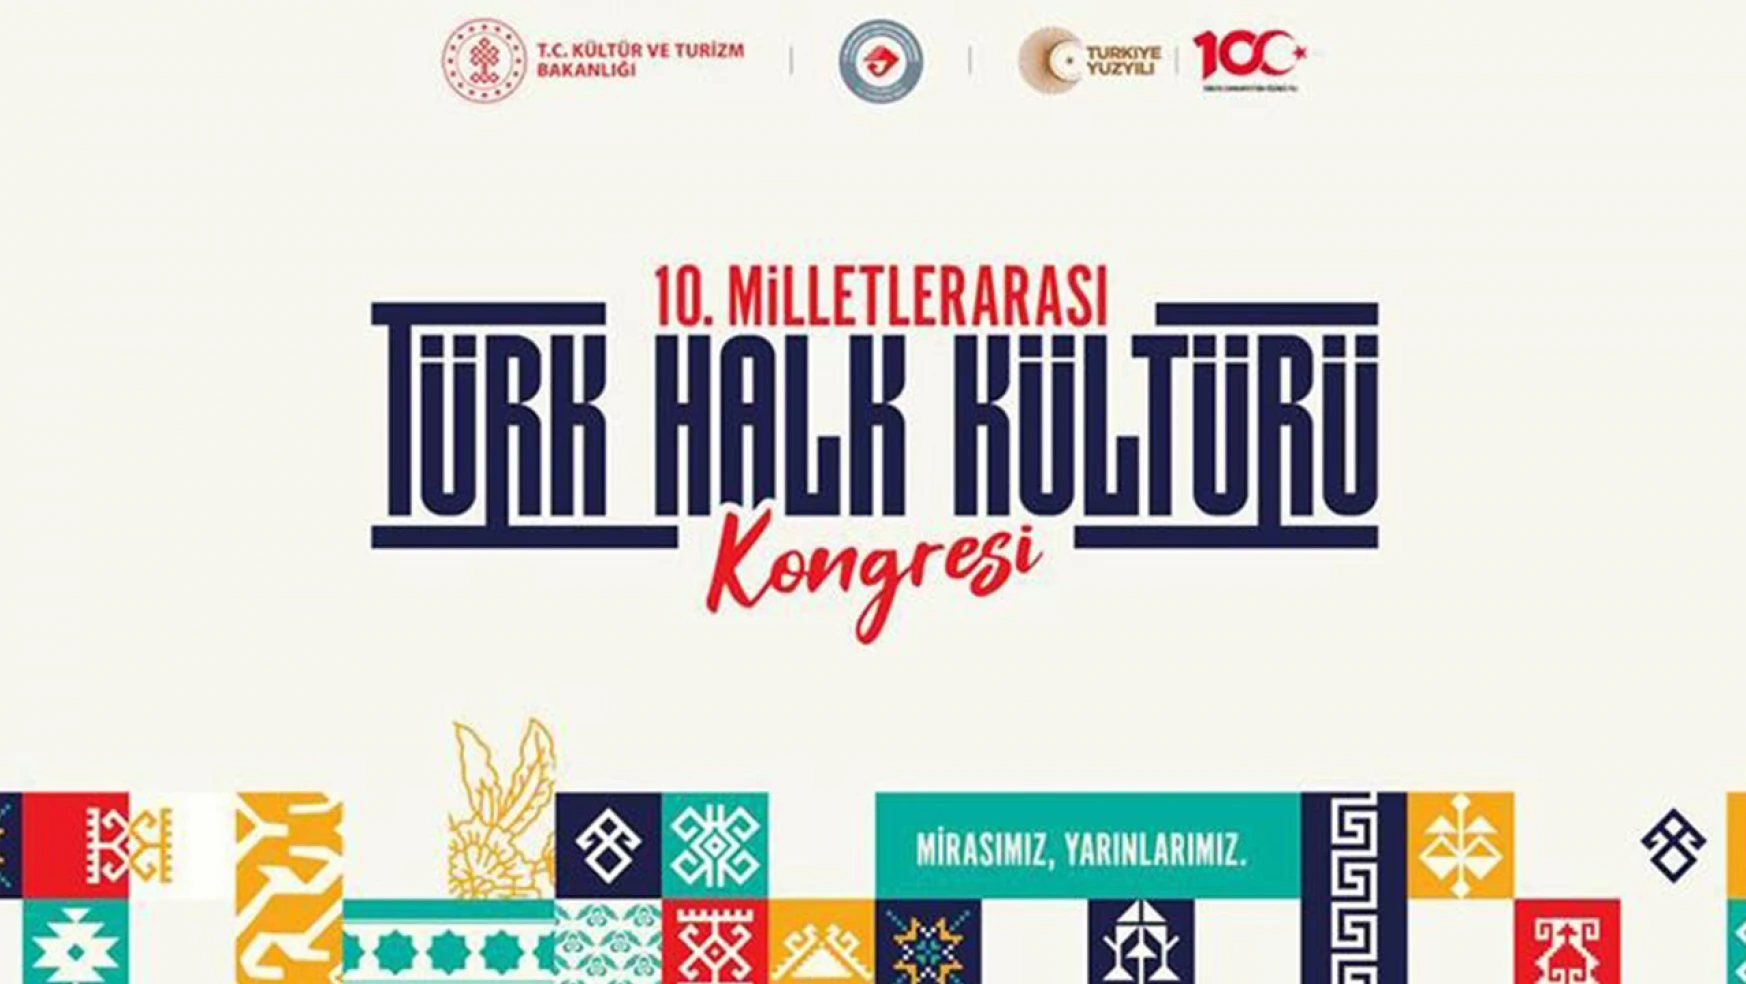 10. Milletlerarası Türk Halk Kültürü Kongresi başlıyor